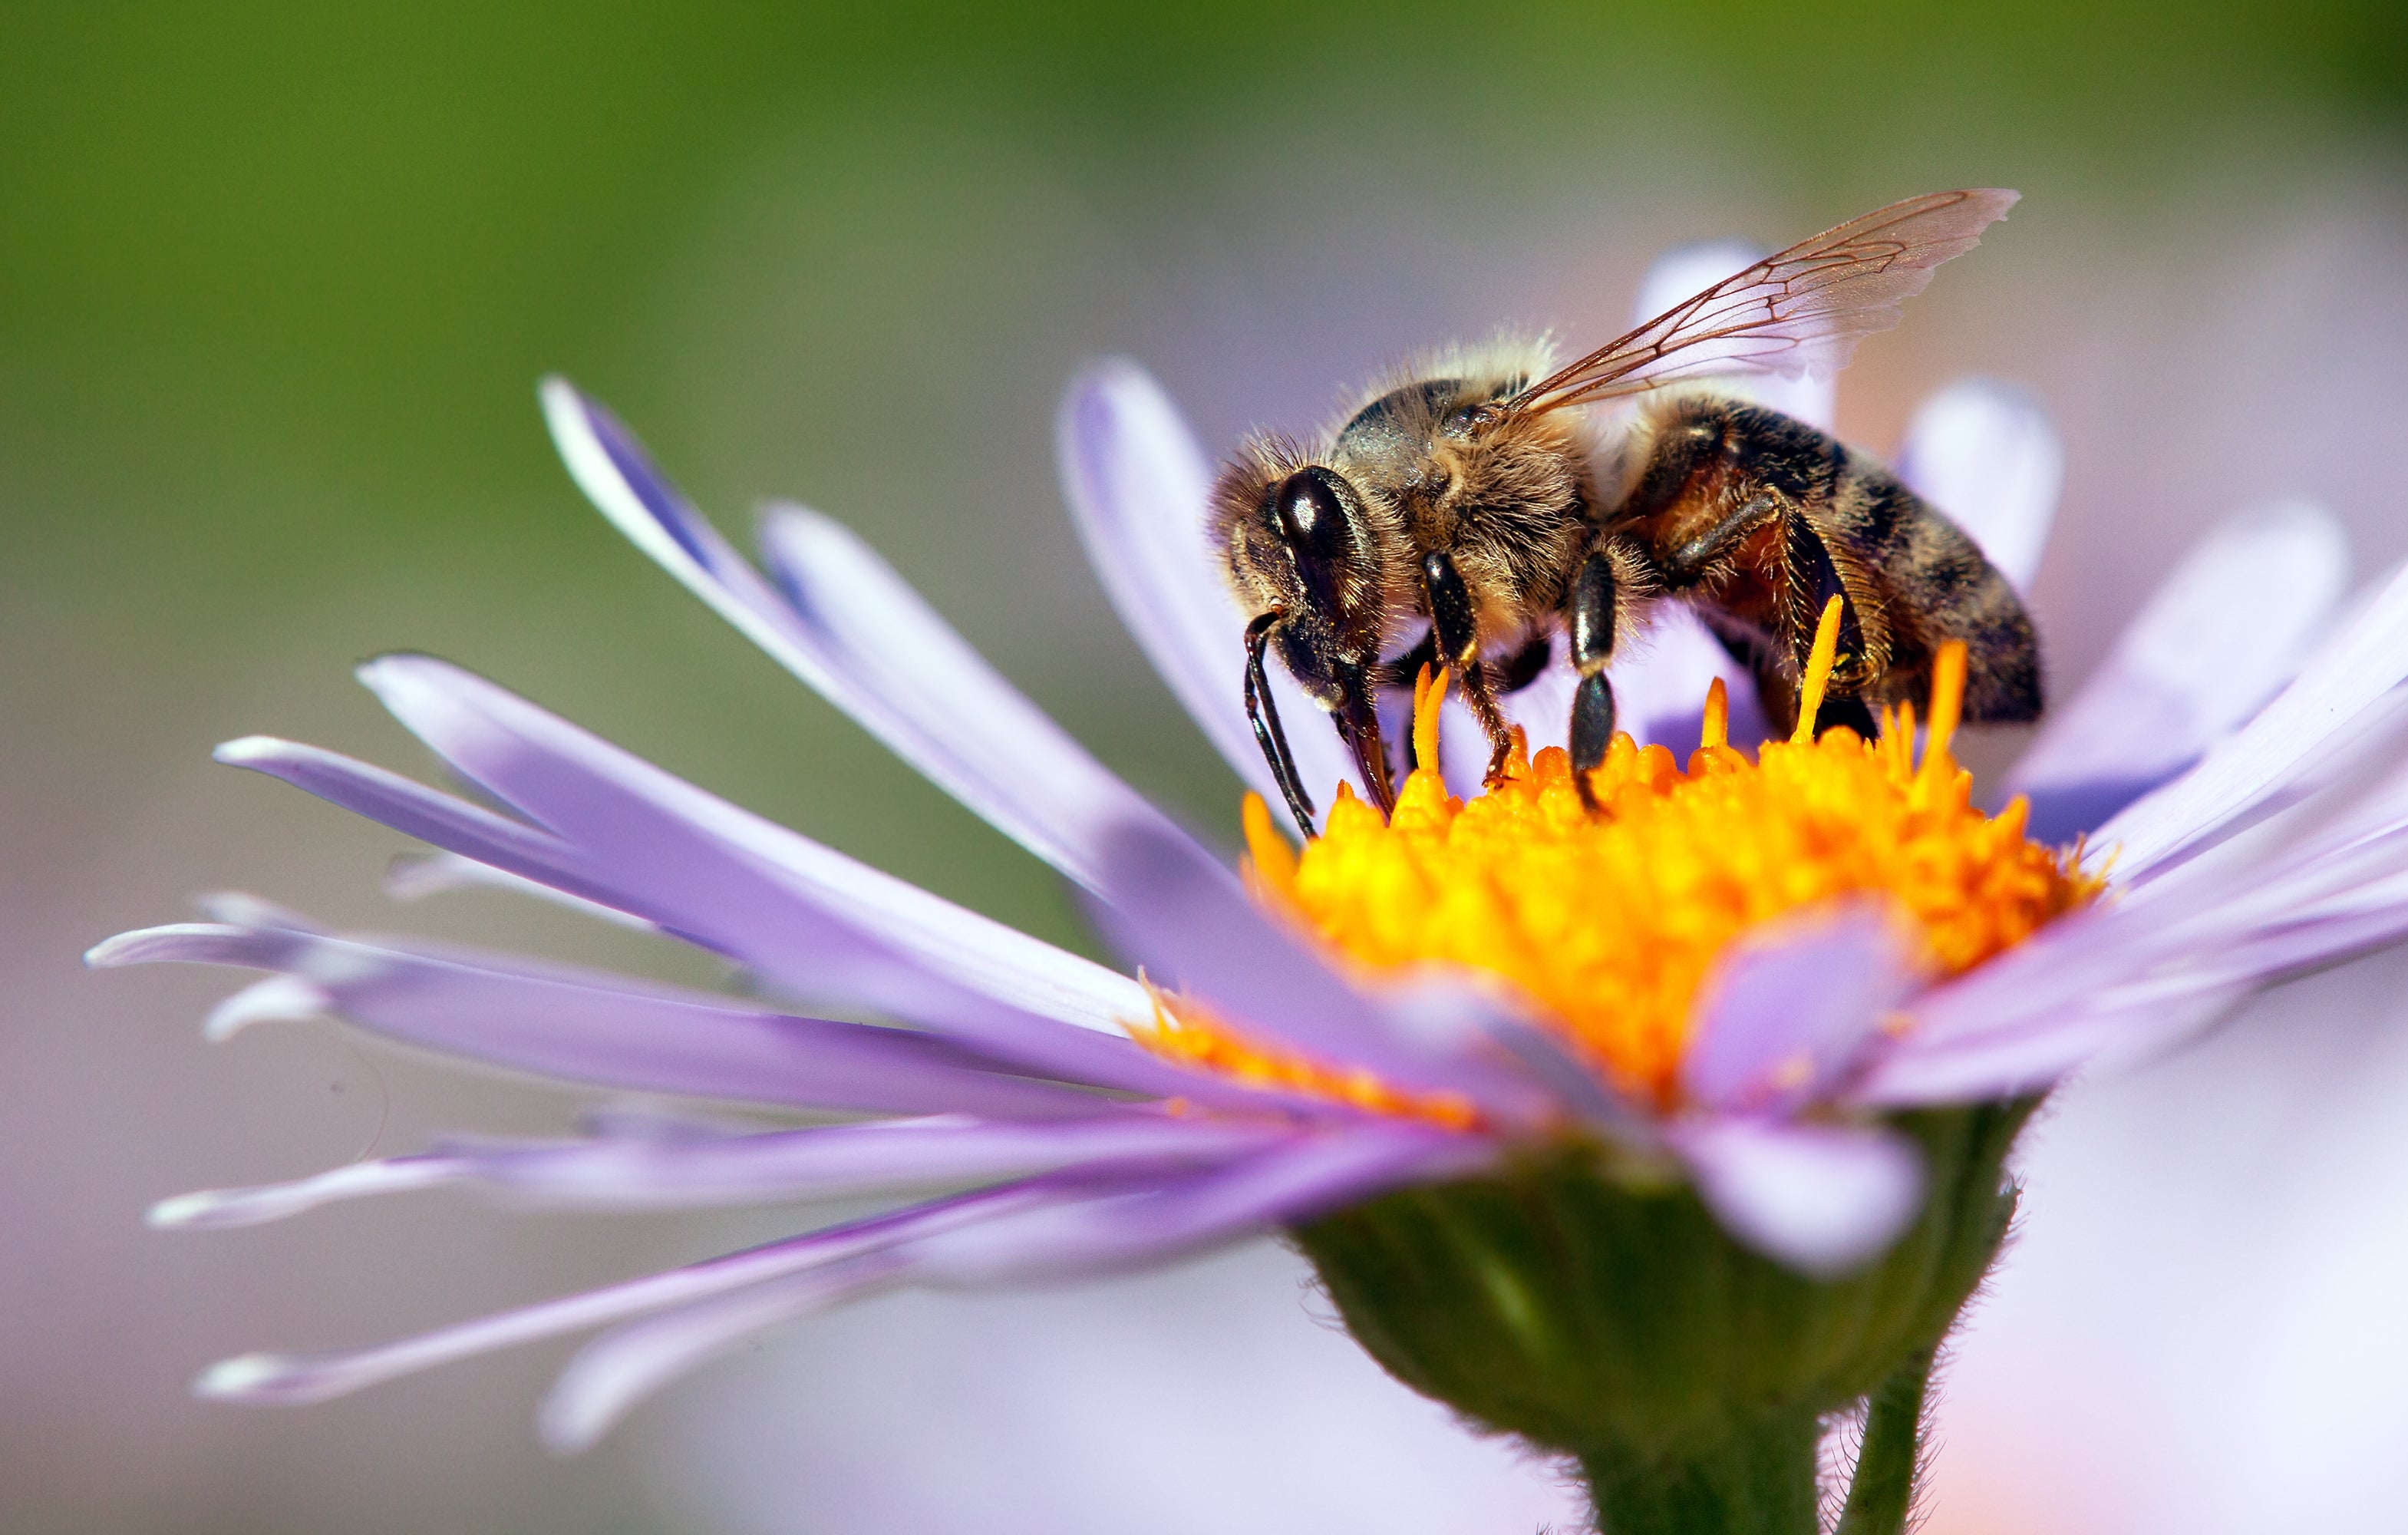 A honeybee enjoys a meal